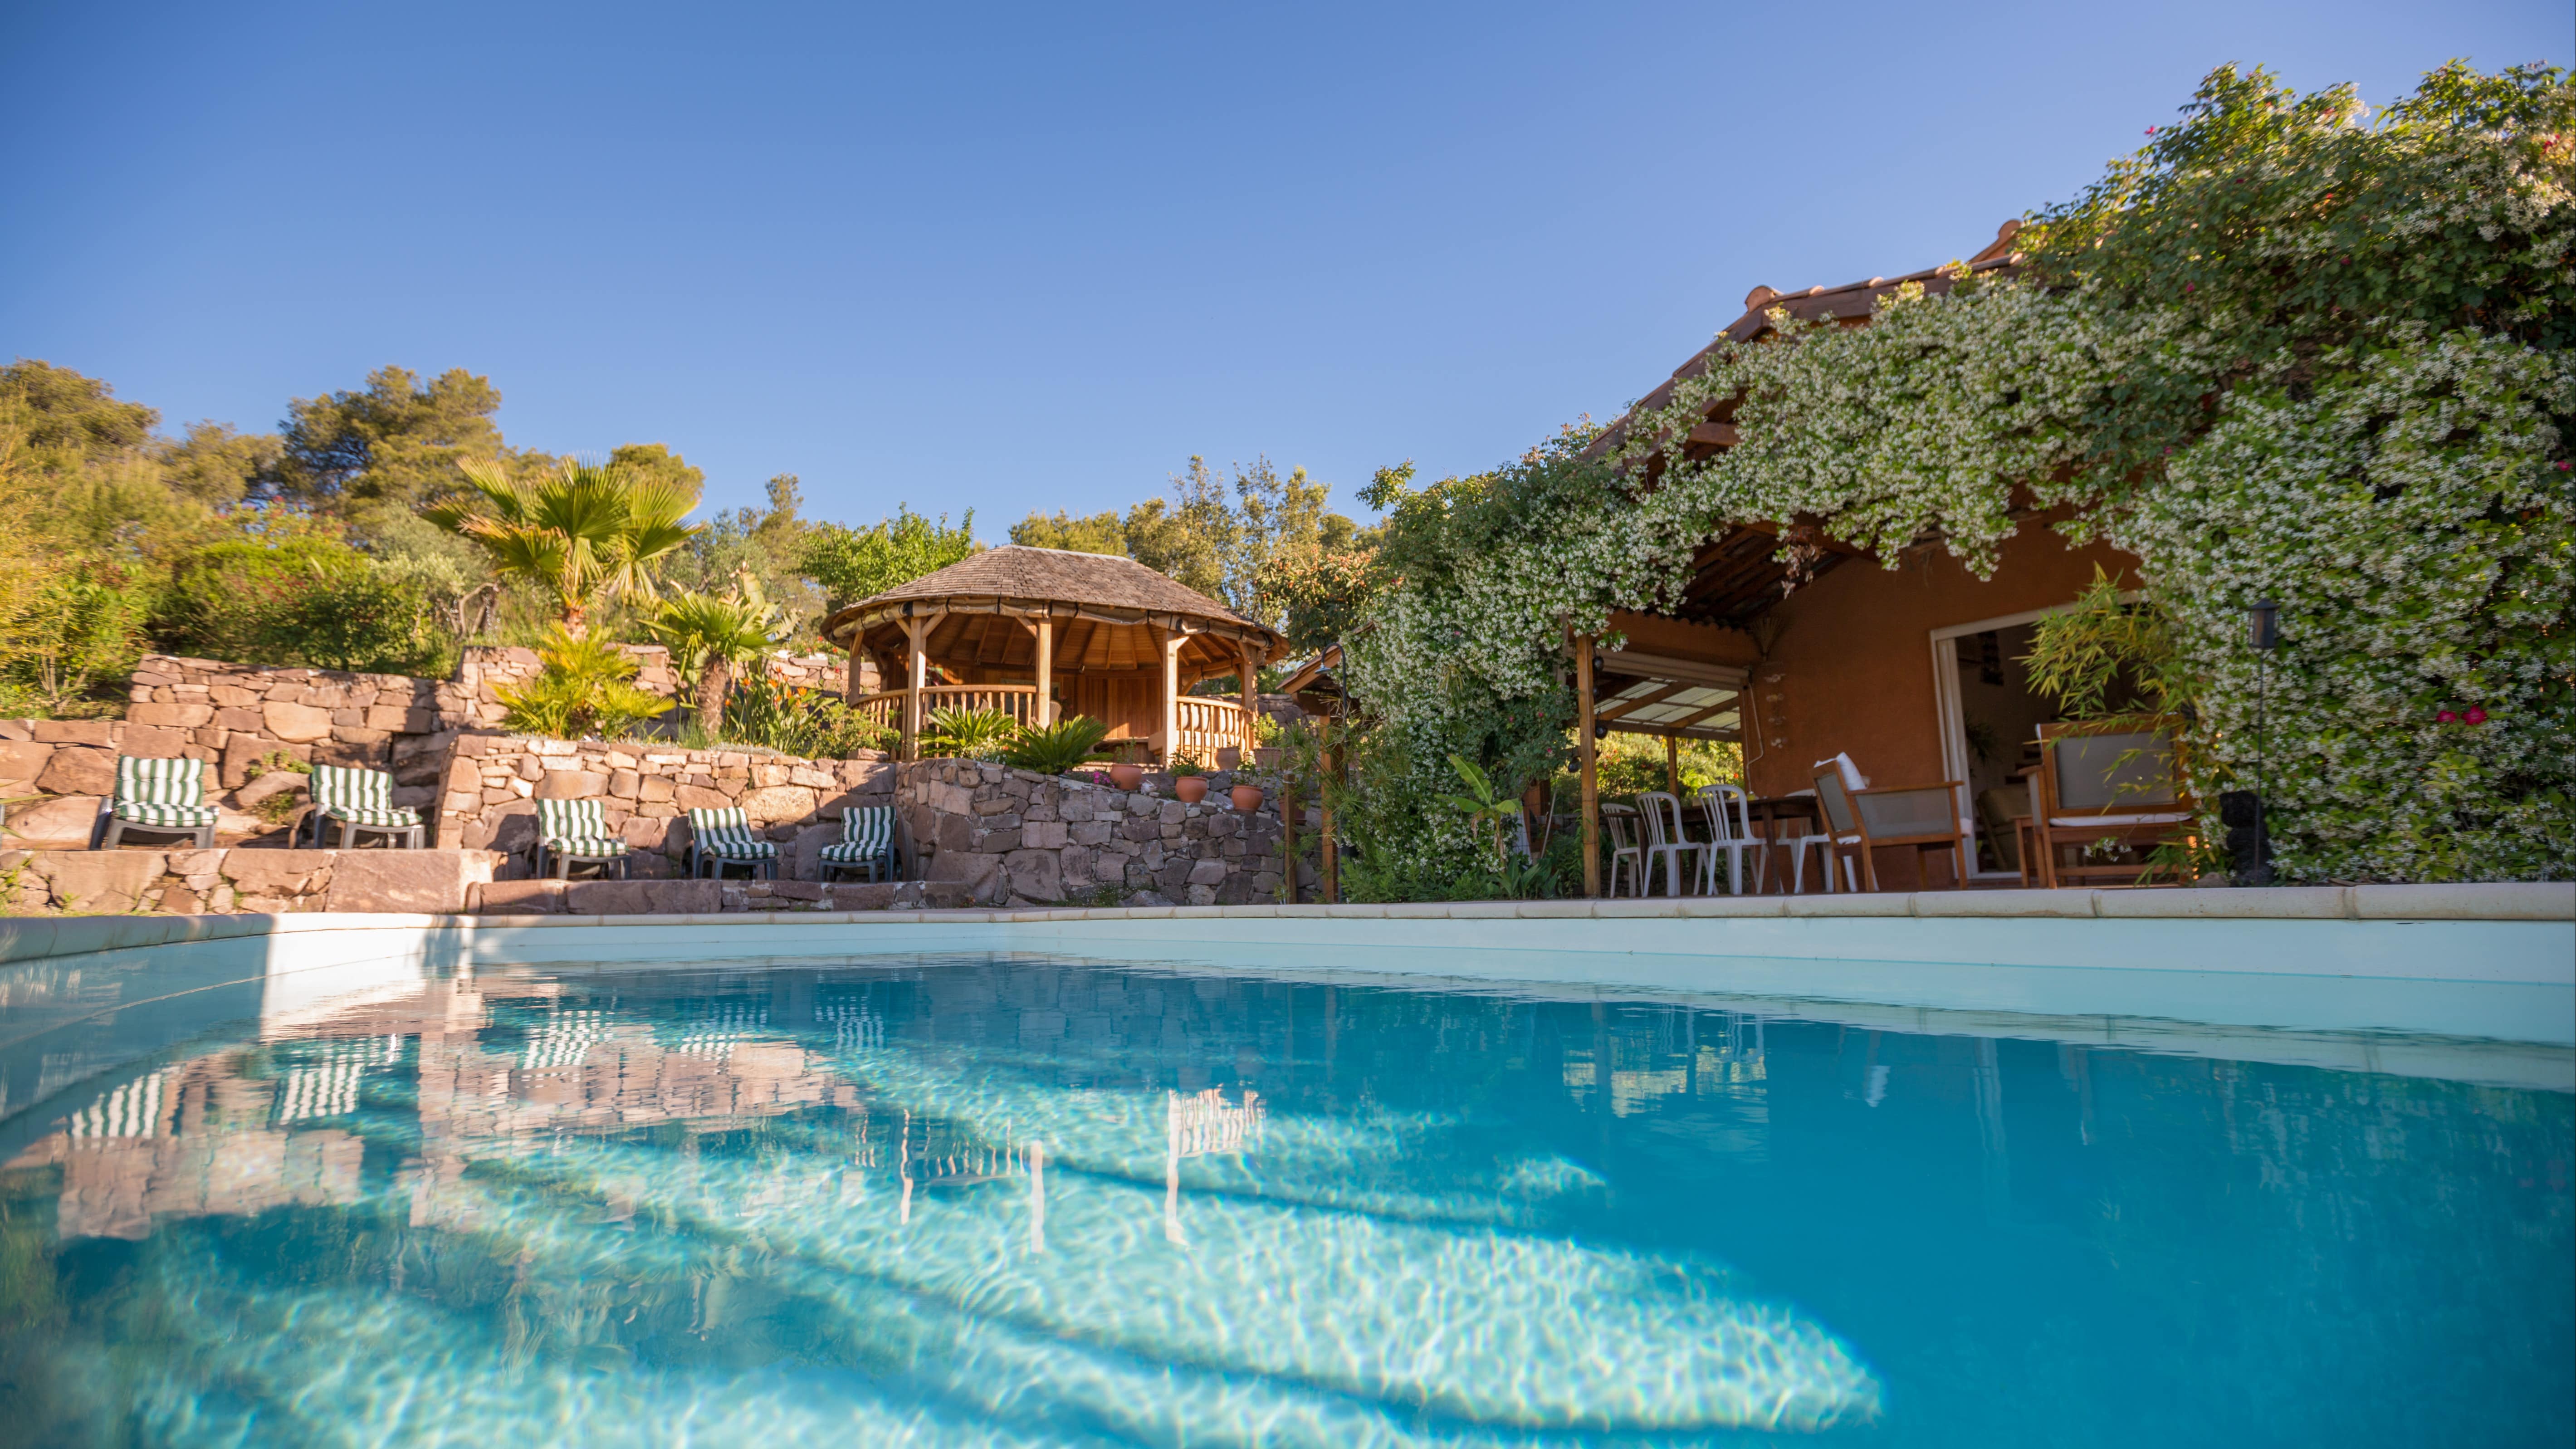 Louer une maison de vacances avec piscine pas chère